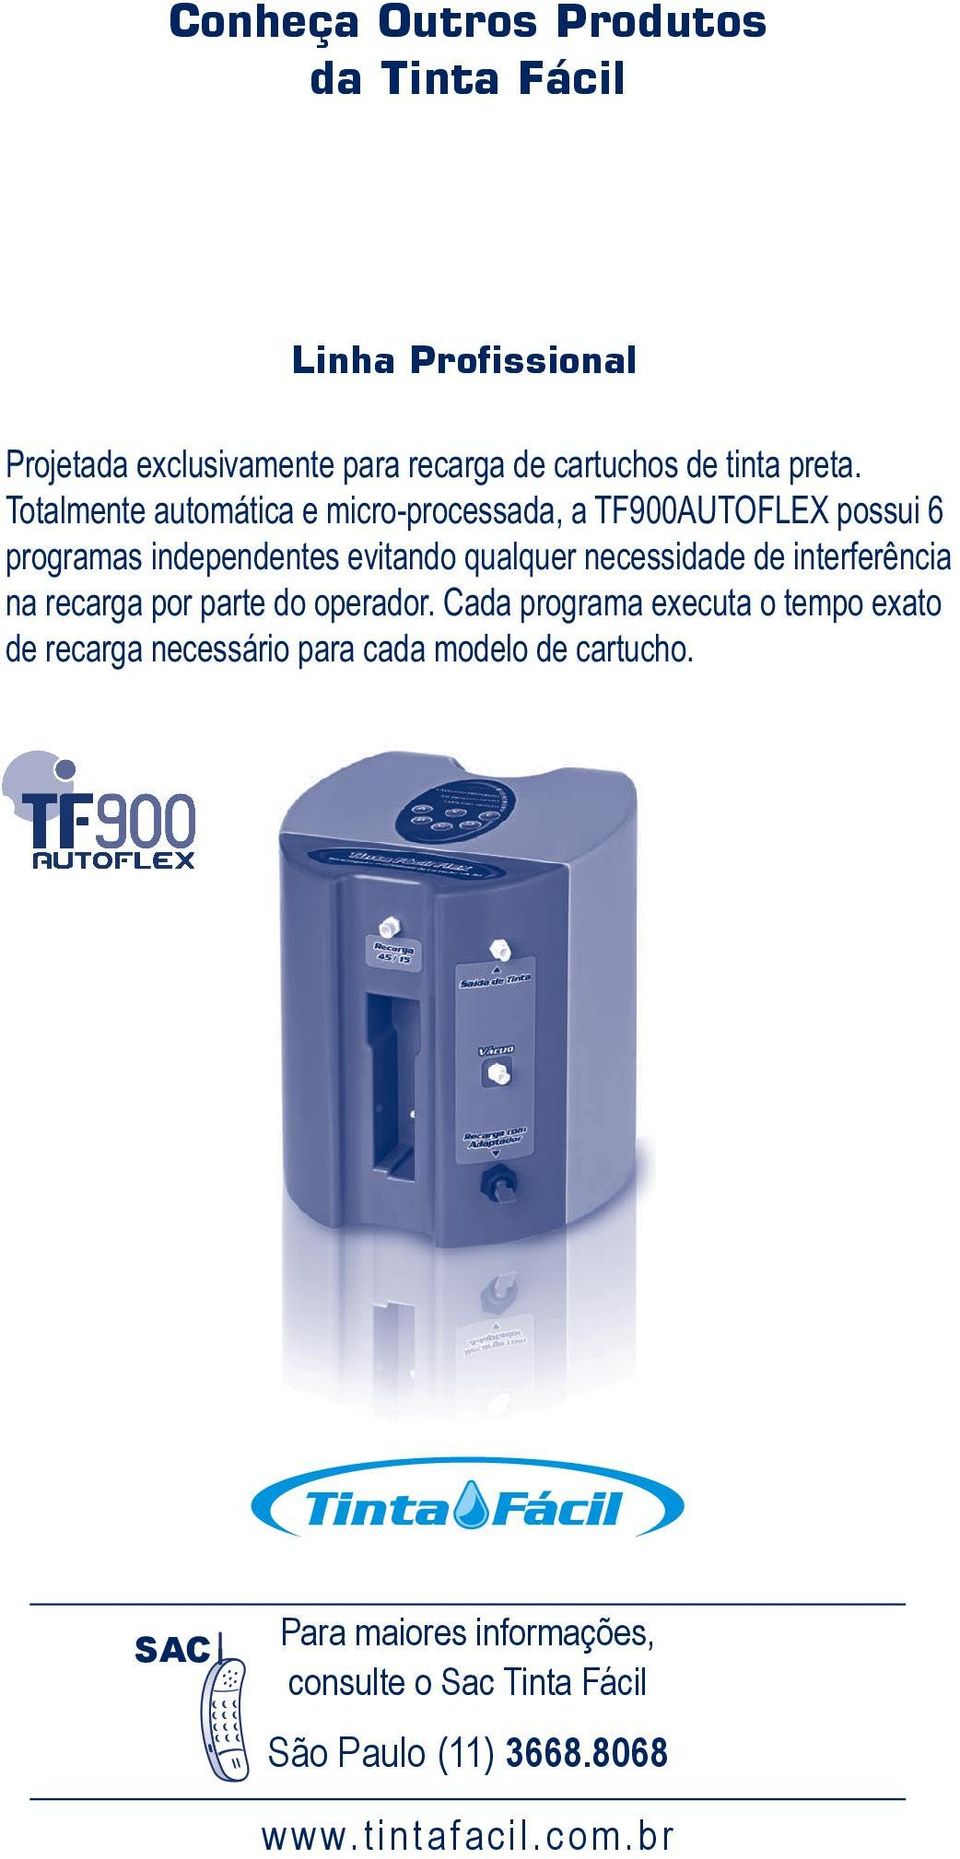 Totalmente automática e micro-processada, a TF900AutoFlex possui 6 programas independentes evitando qualquer necessidade